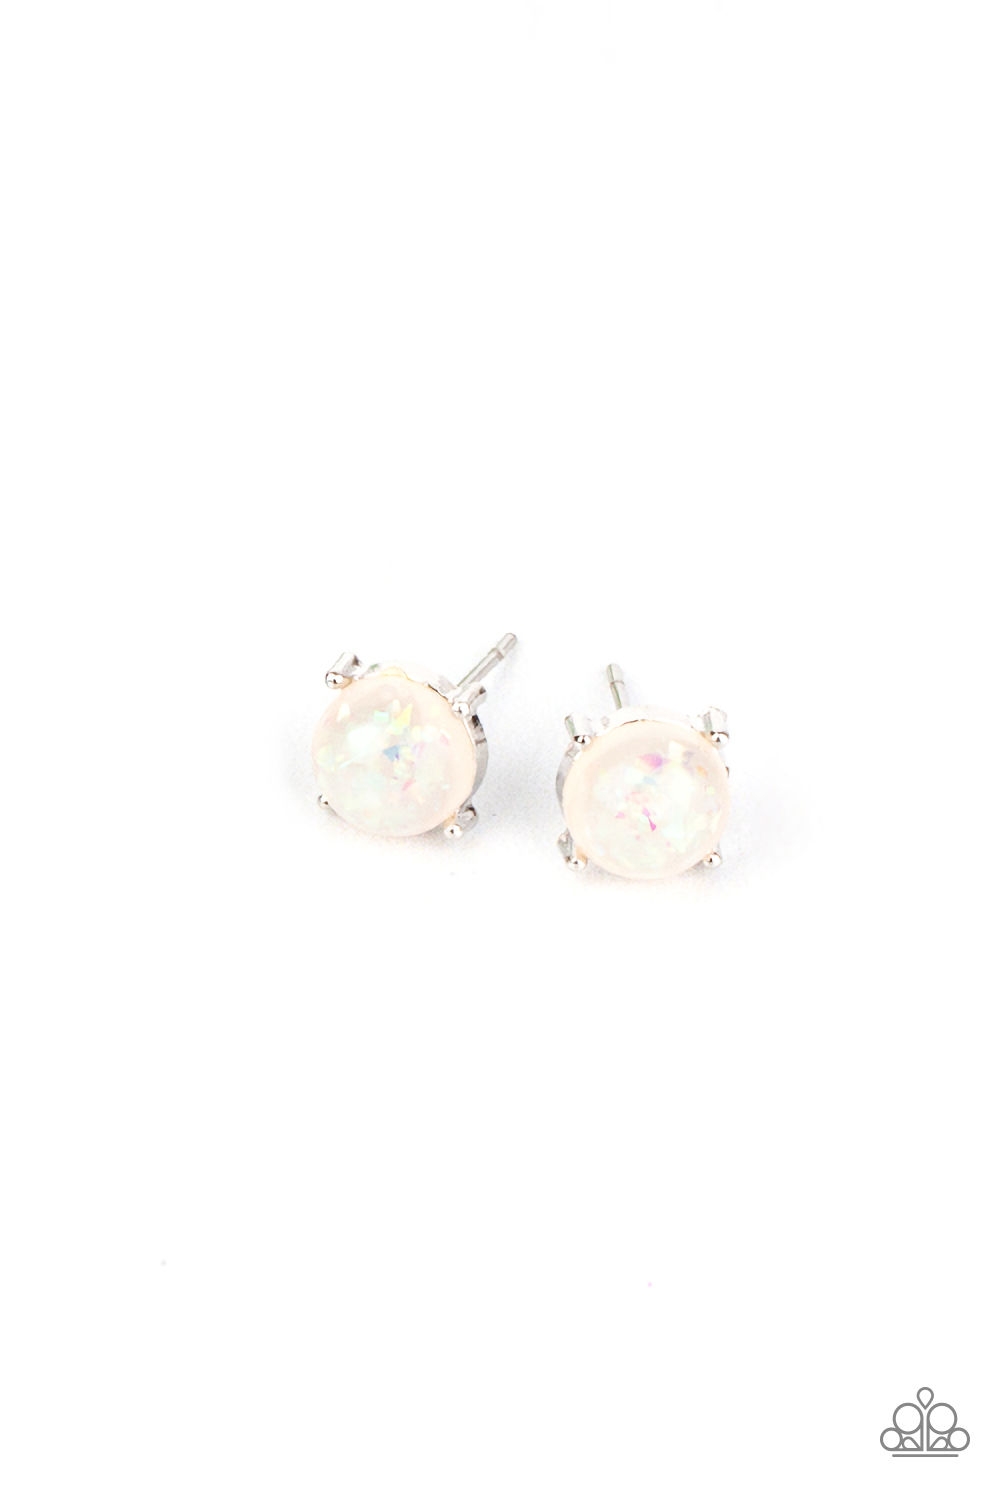 Earring - Starlet Shimmer Sparkle Bead Post - White